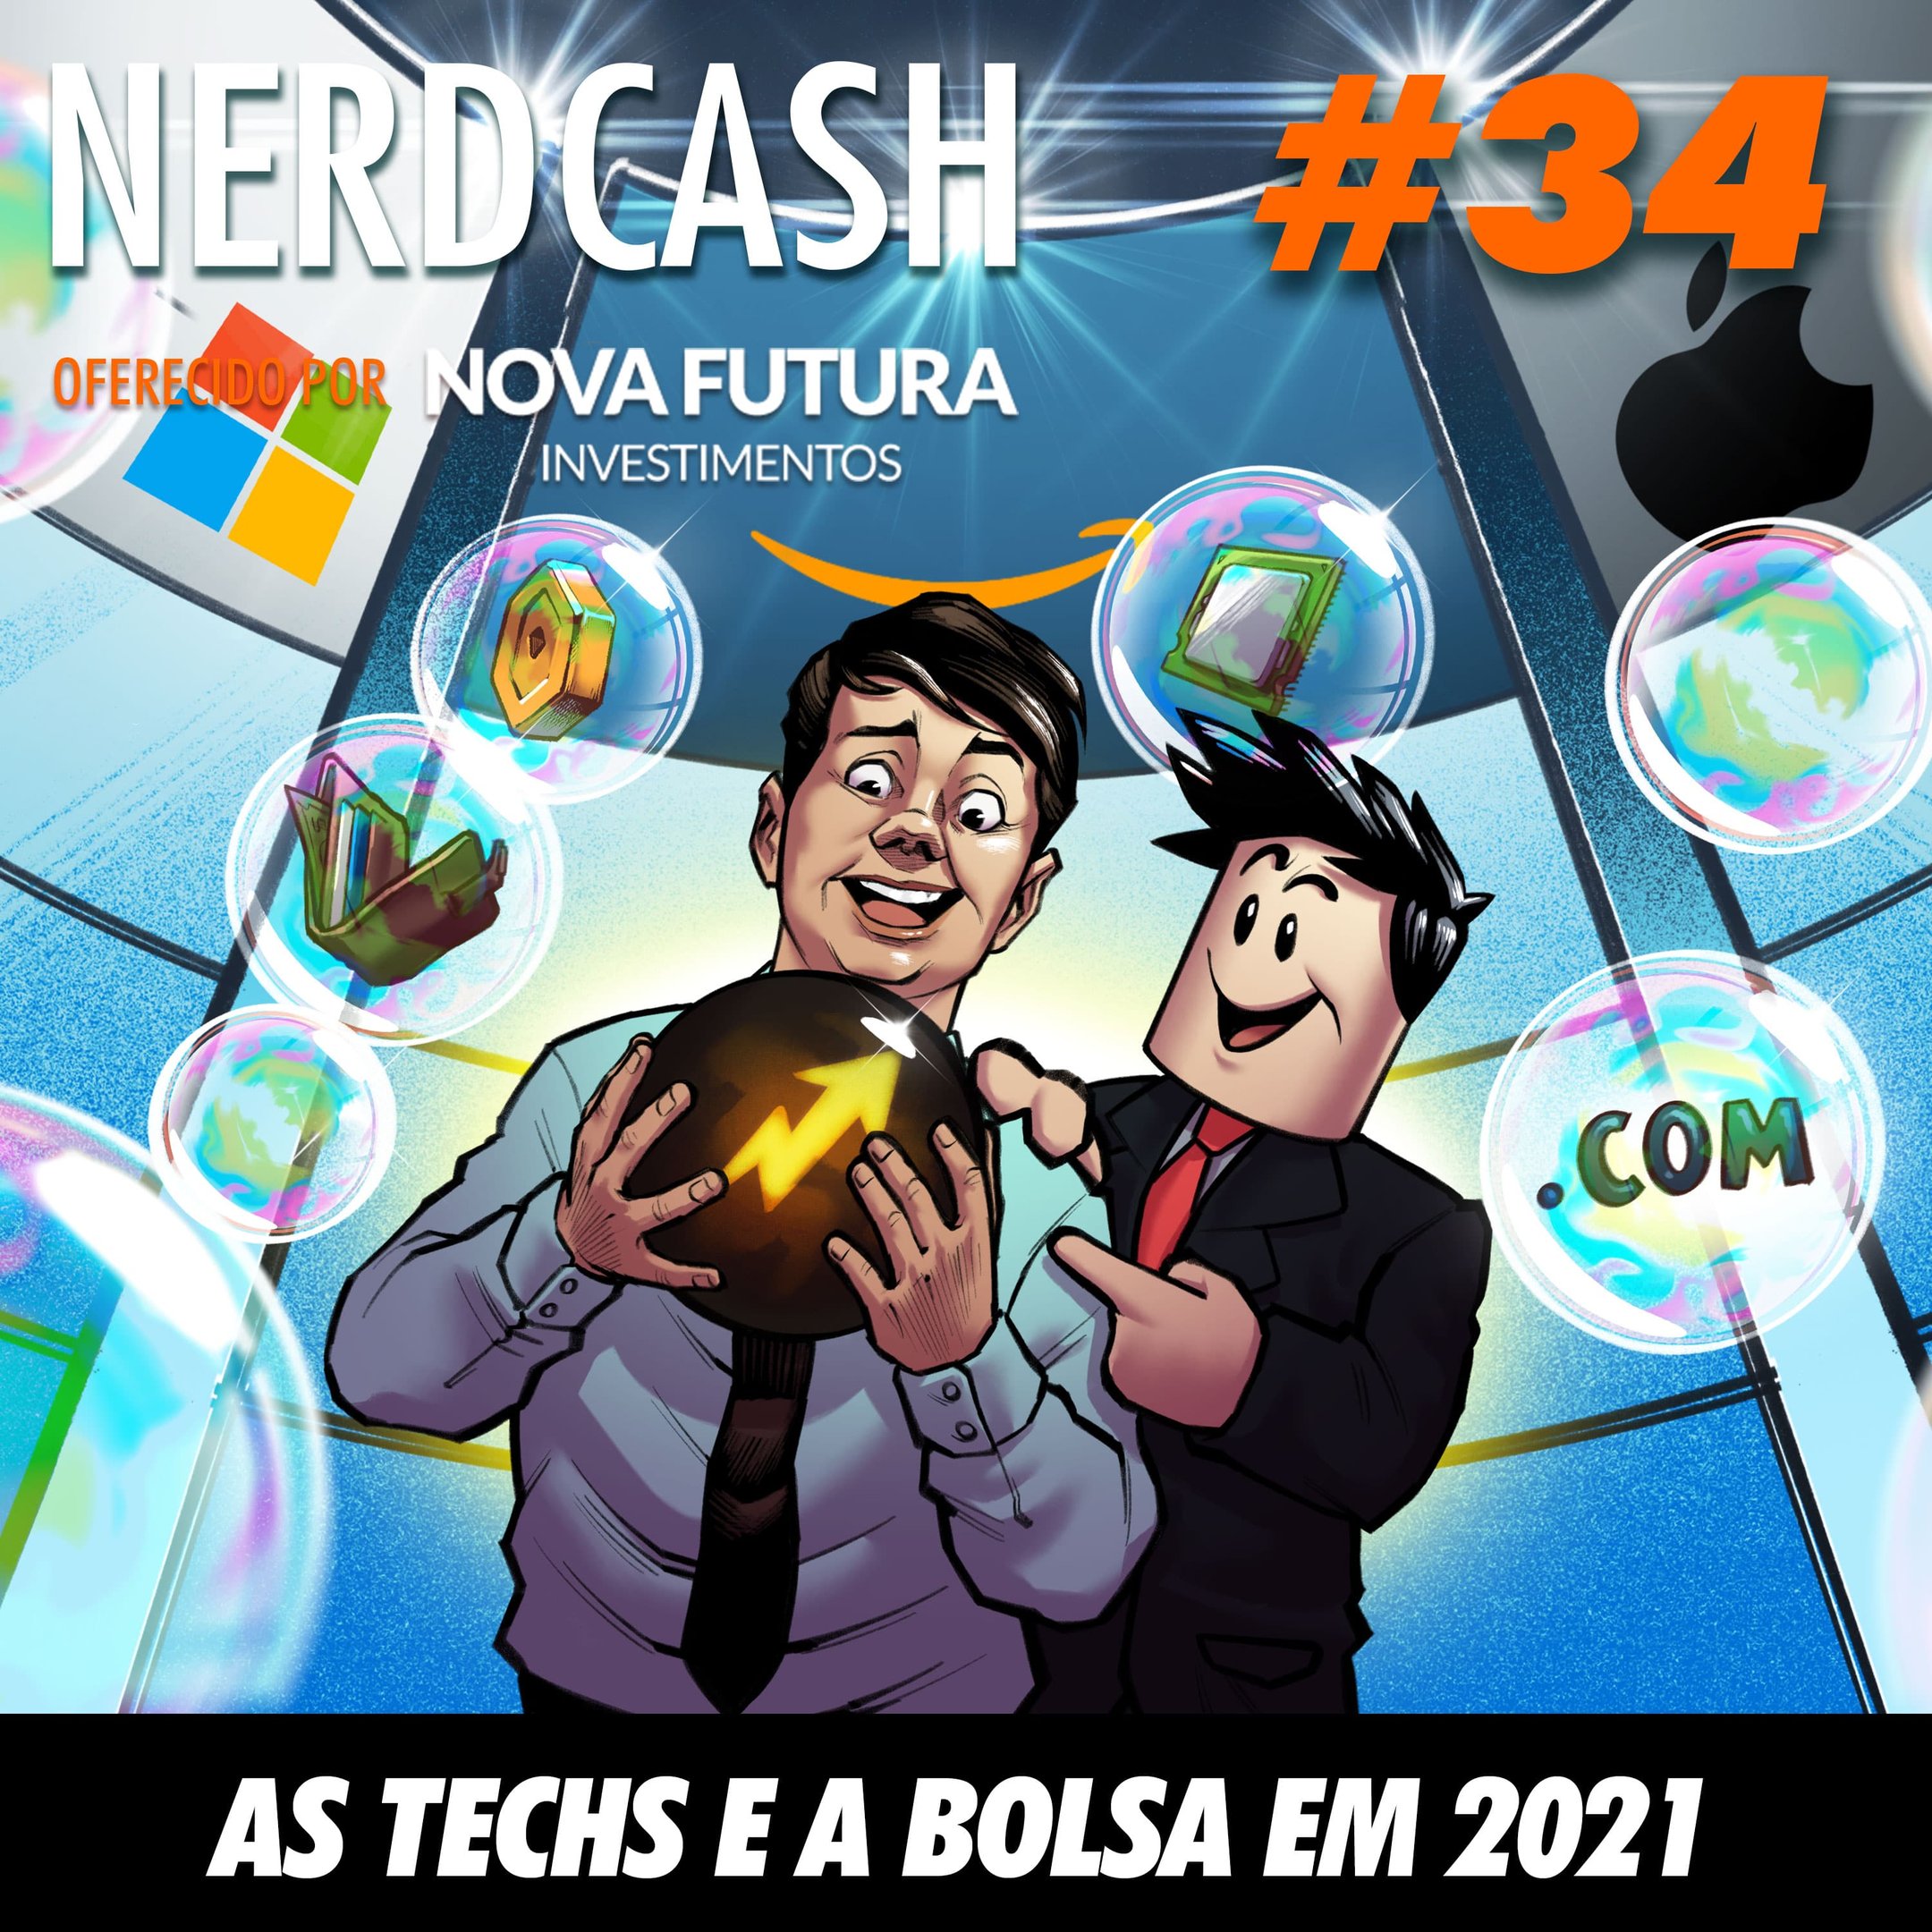 NerdCash 34 - As techs e a bolsa em 2021